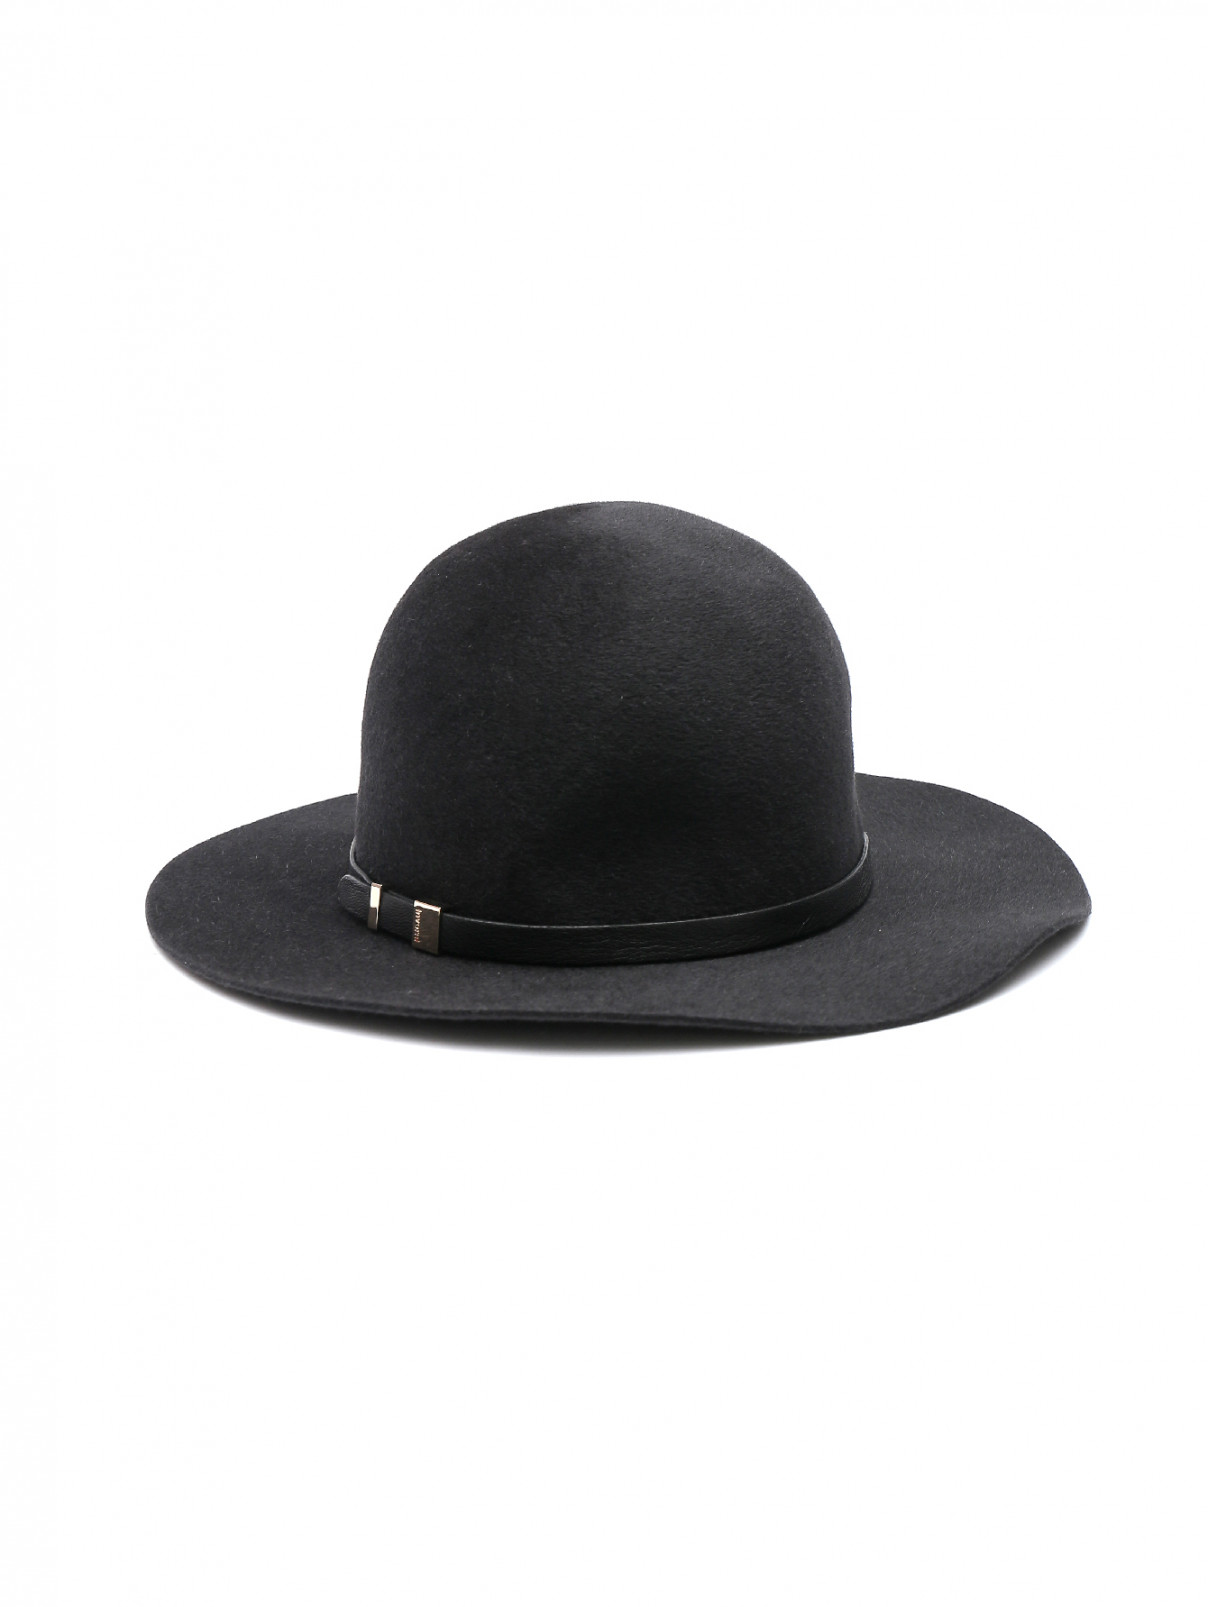 Шляпа шерстяная Inverni  –  Общий вид  – Цвет:  Черный